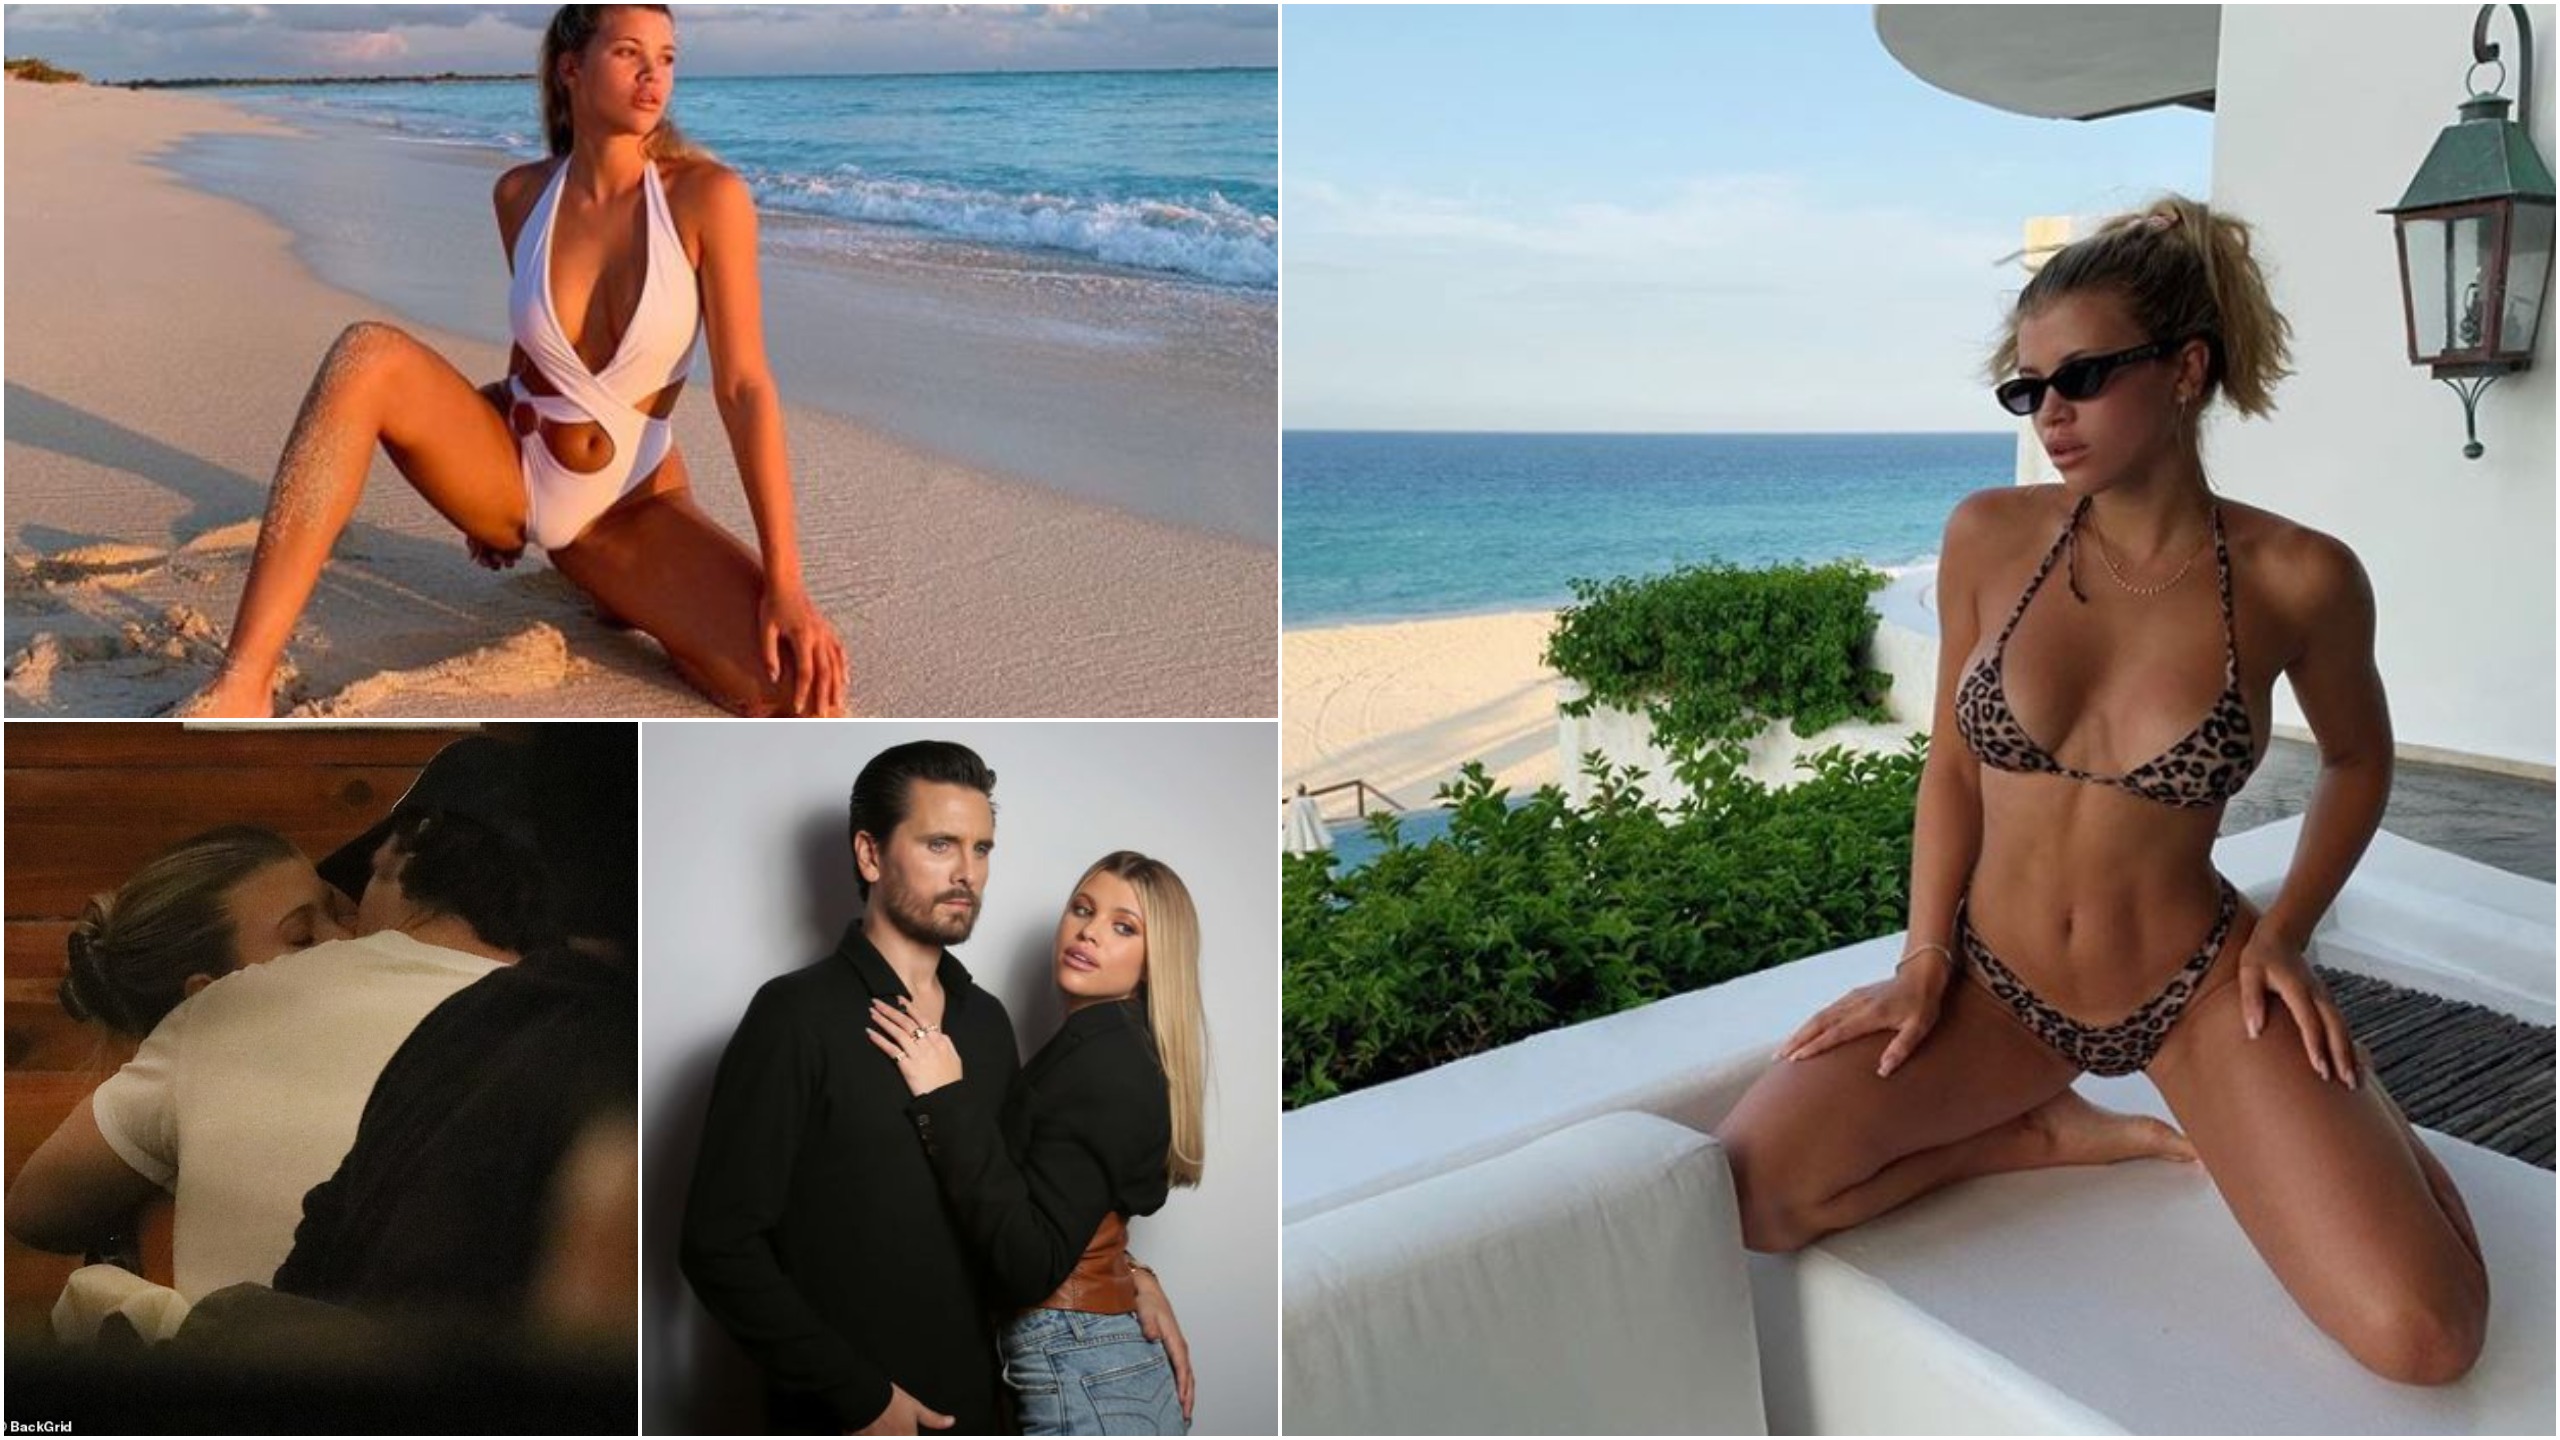 Puthje pasionante me të dashurin e ri, modelja Sofia Richie i jep ‘lamtumirën’ Scott Disick